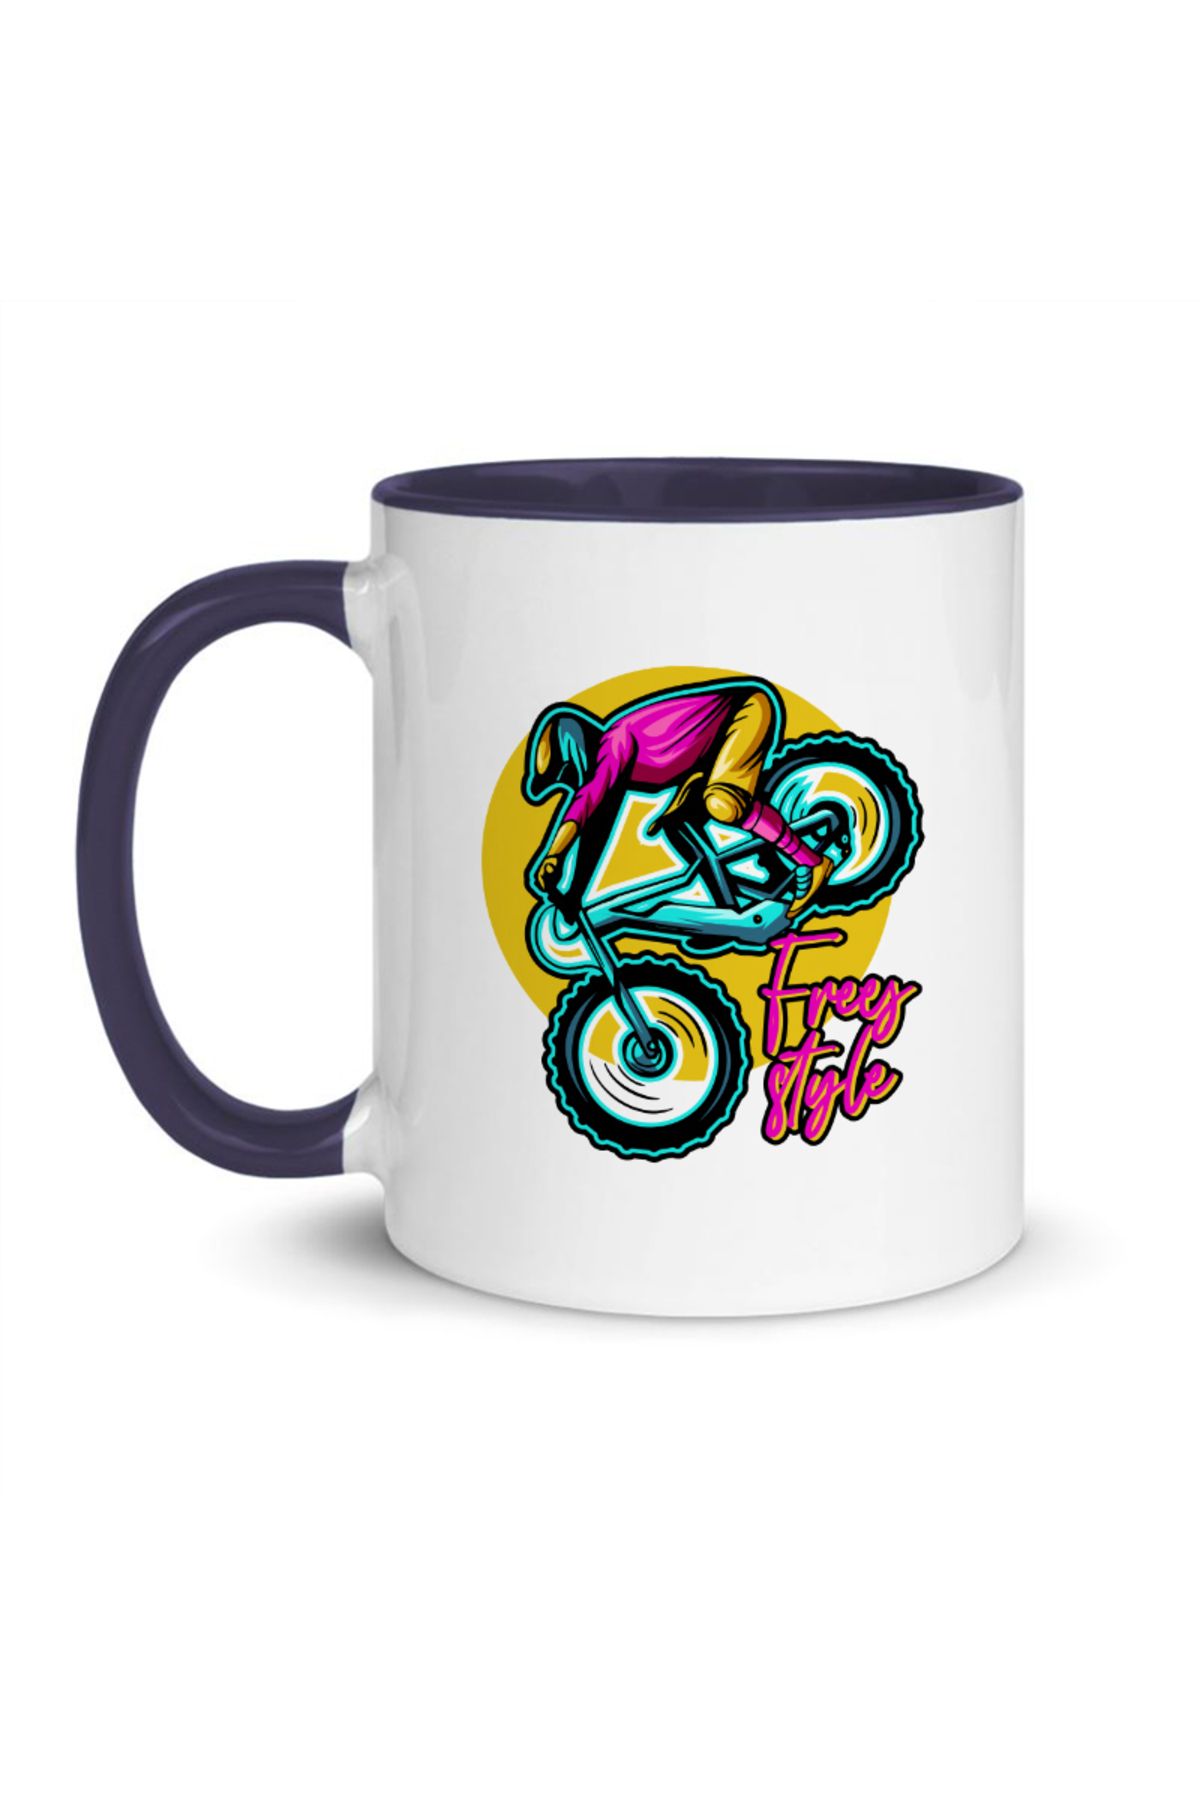 ikitekermarket Bisiklet Temalı Renkli Kupa Bardak, Mug, Hediyelik, MTB, BMX